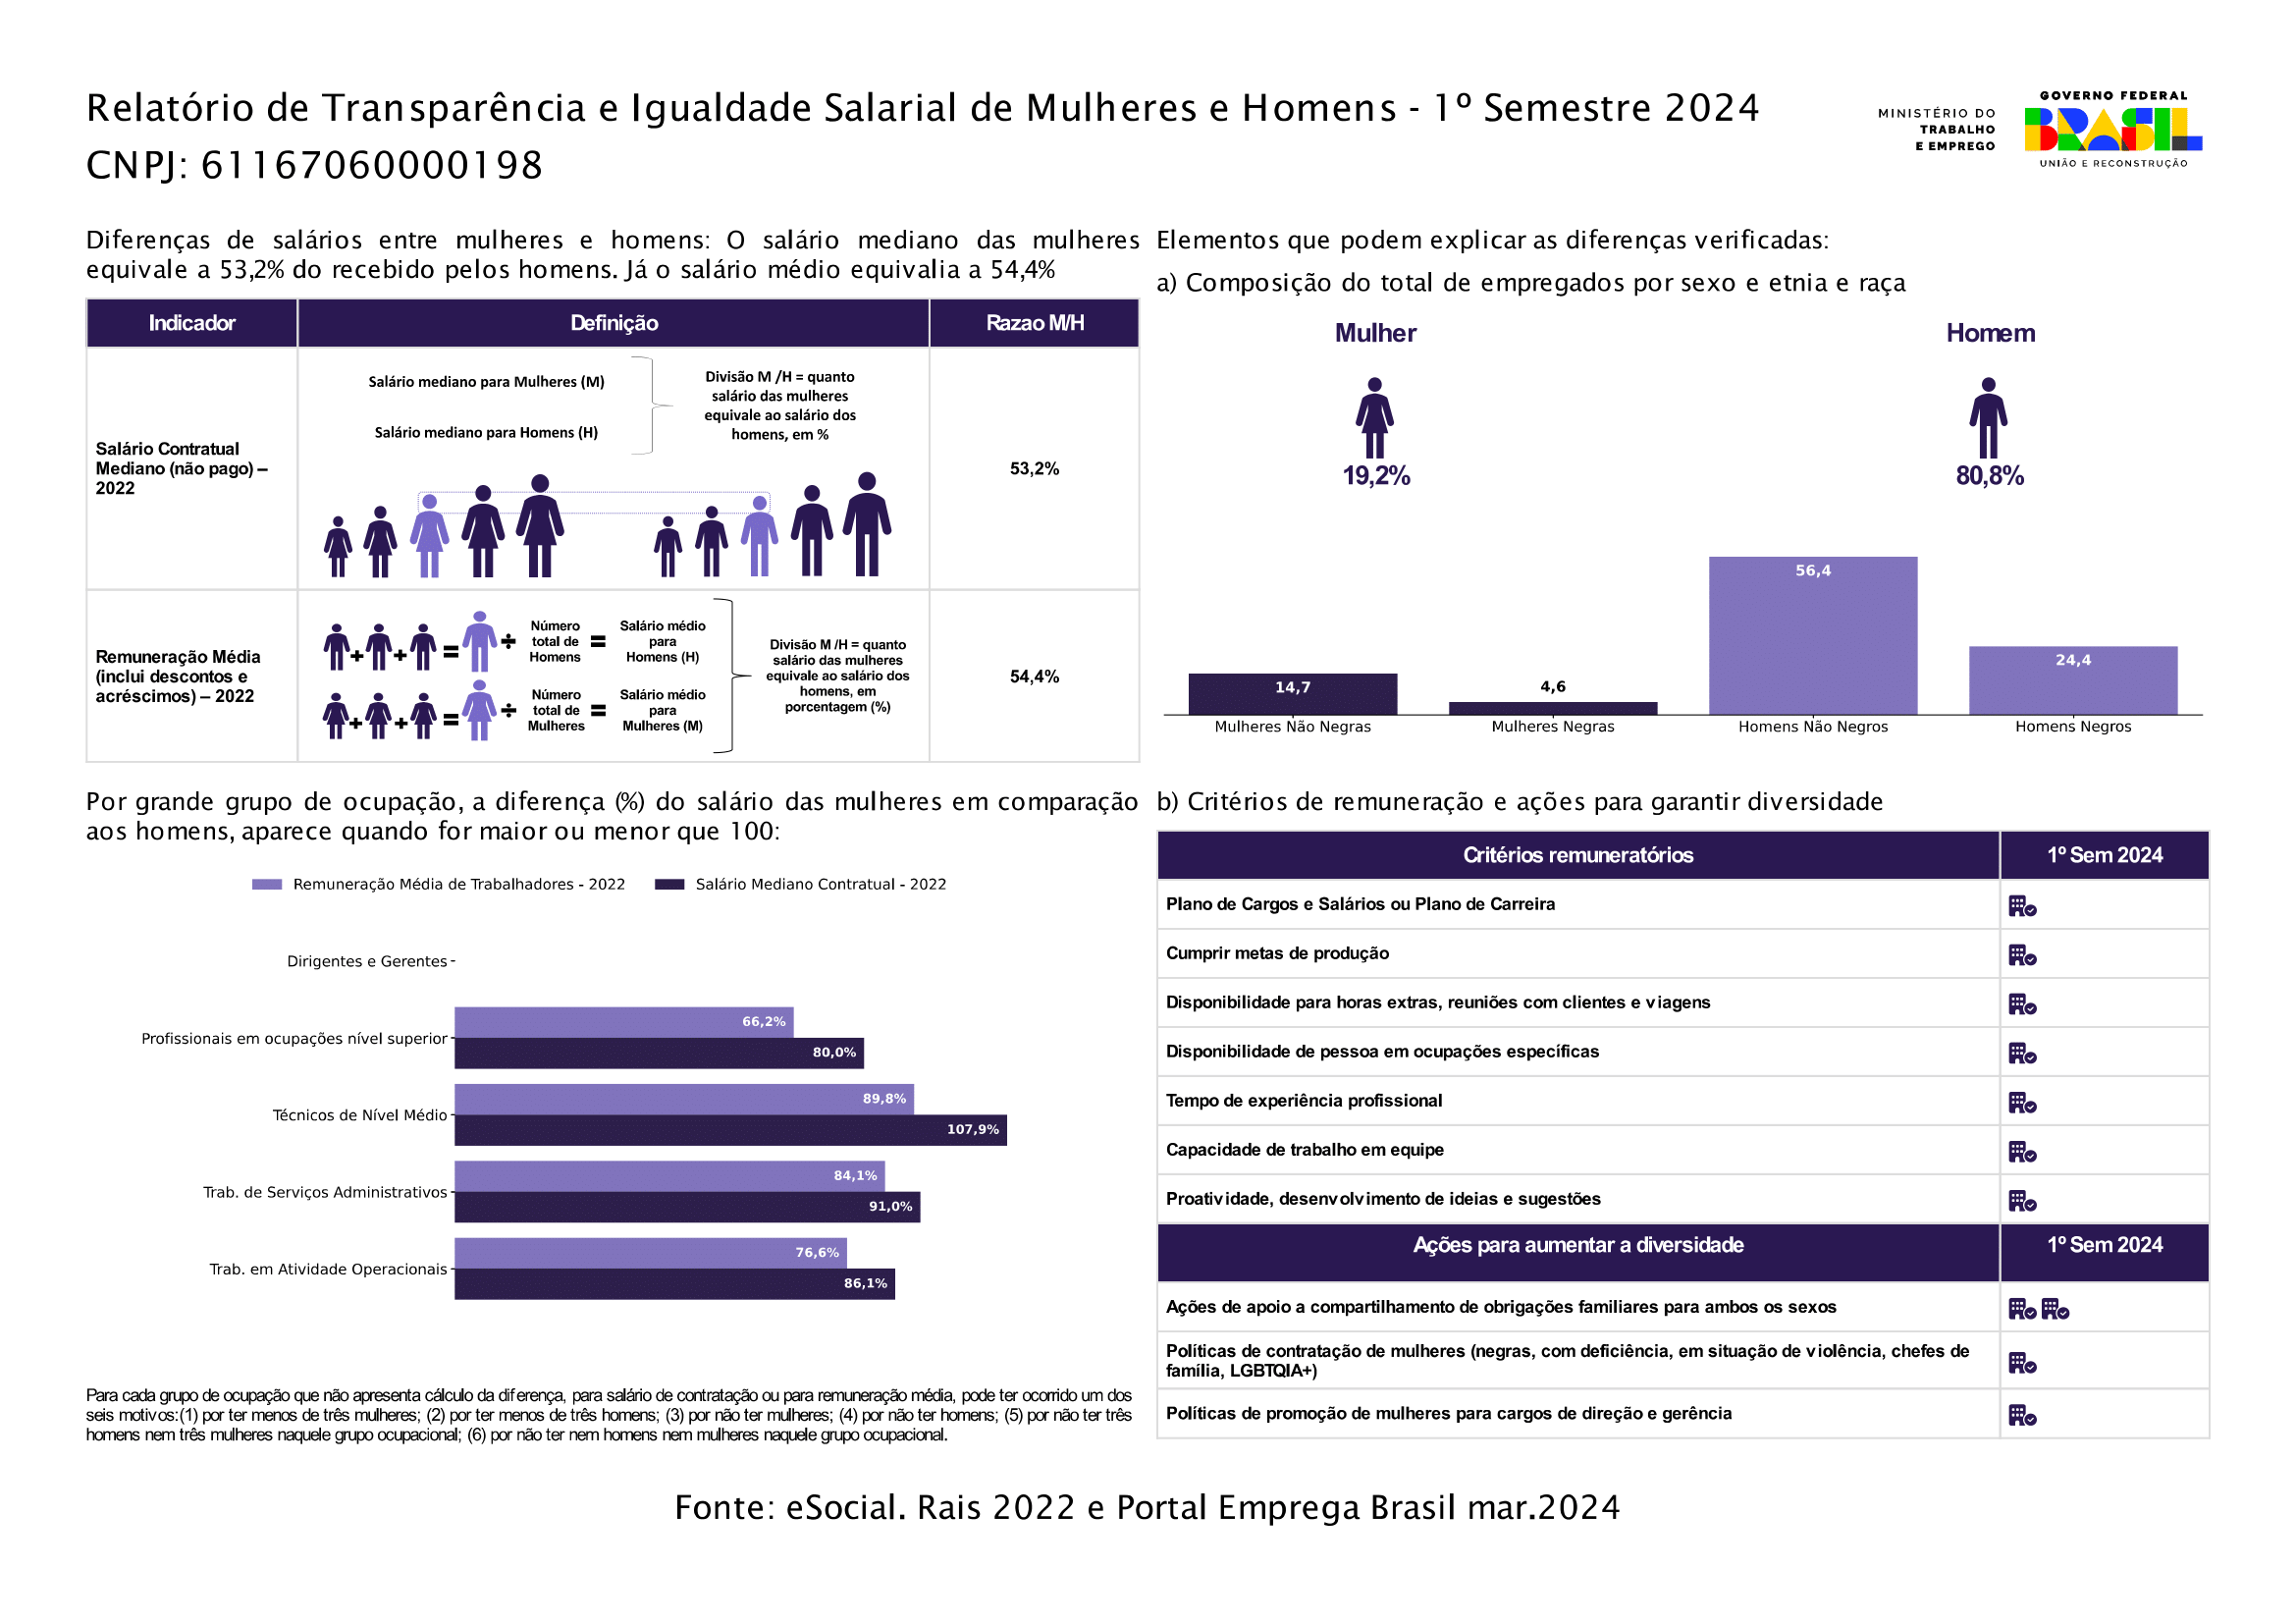 Relatório de Transparência e Igualdade Salarial de Mulheres e Homens - 1 semestre 2024 | Kimberlit